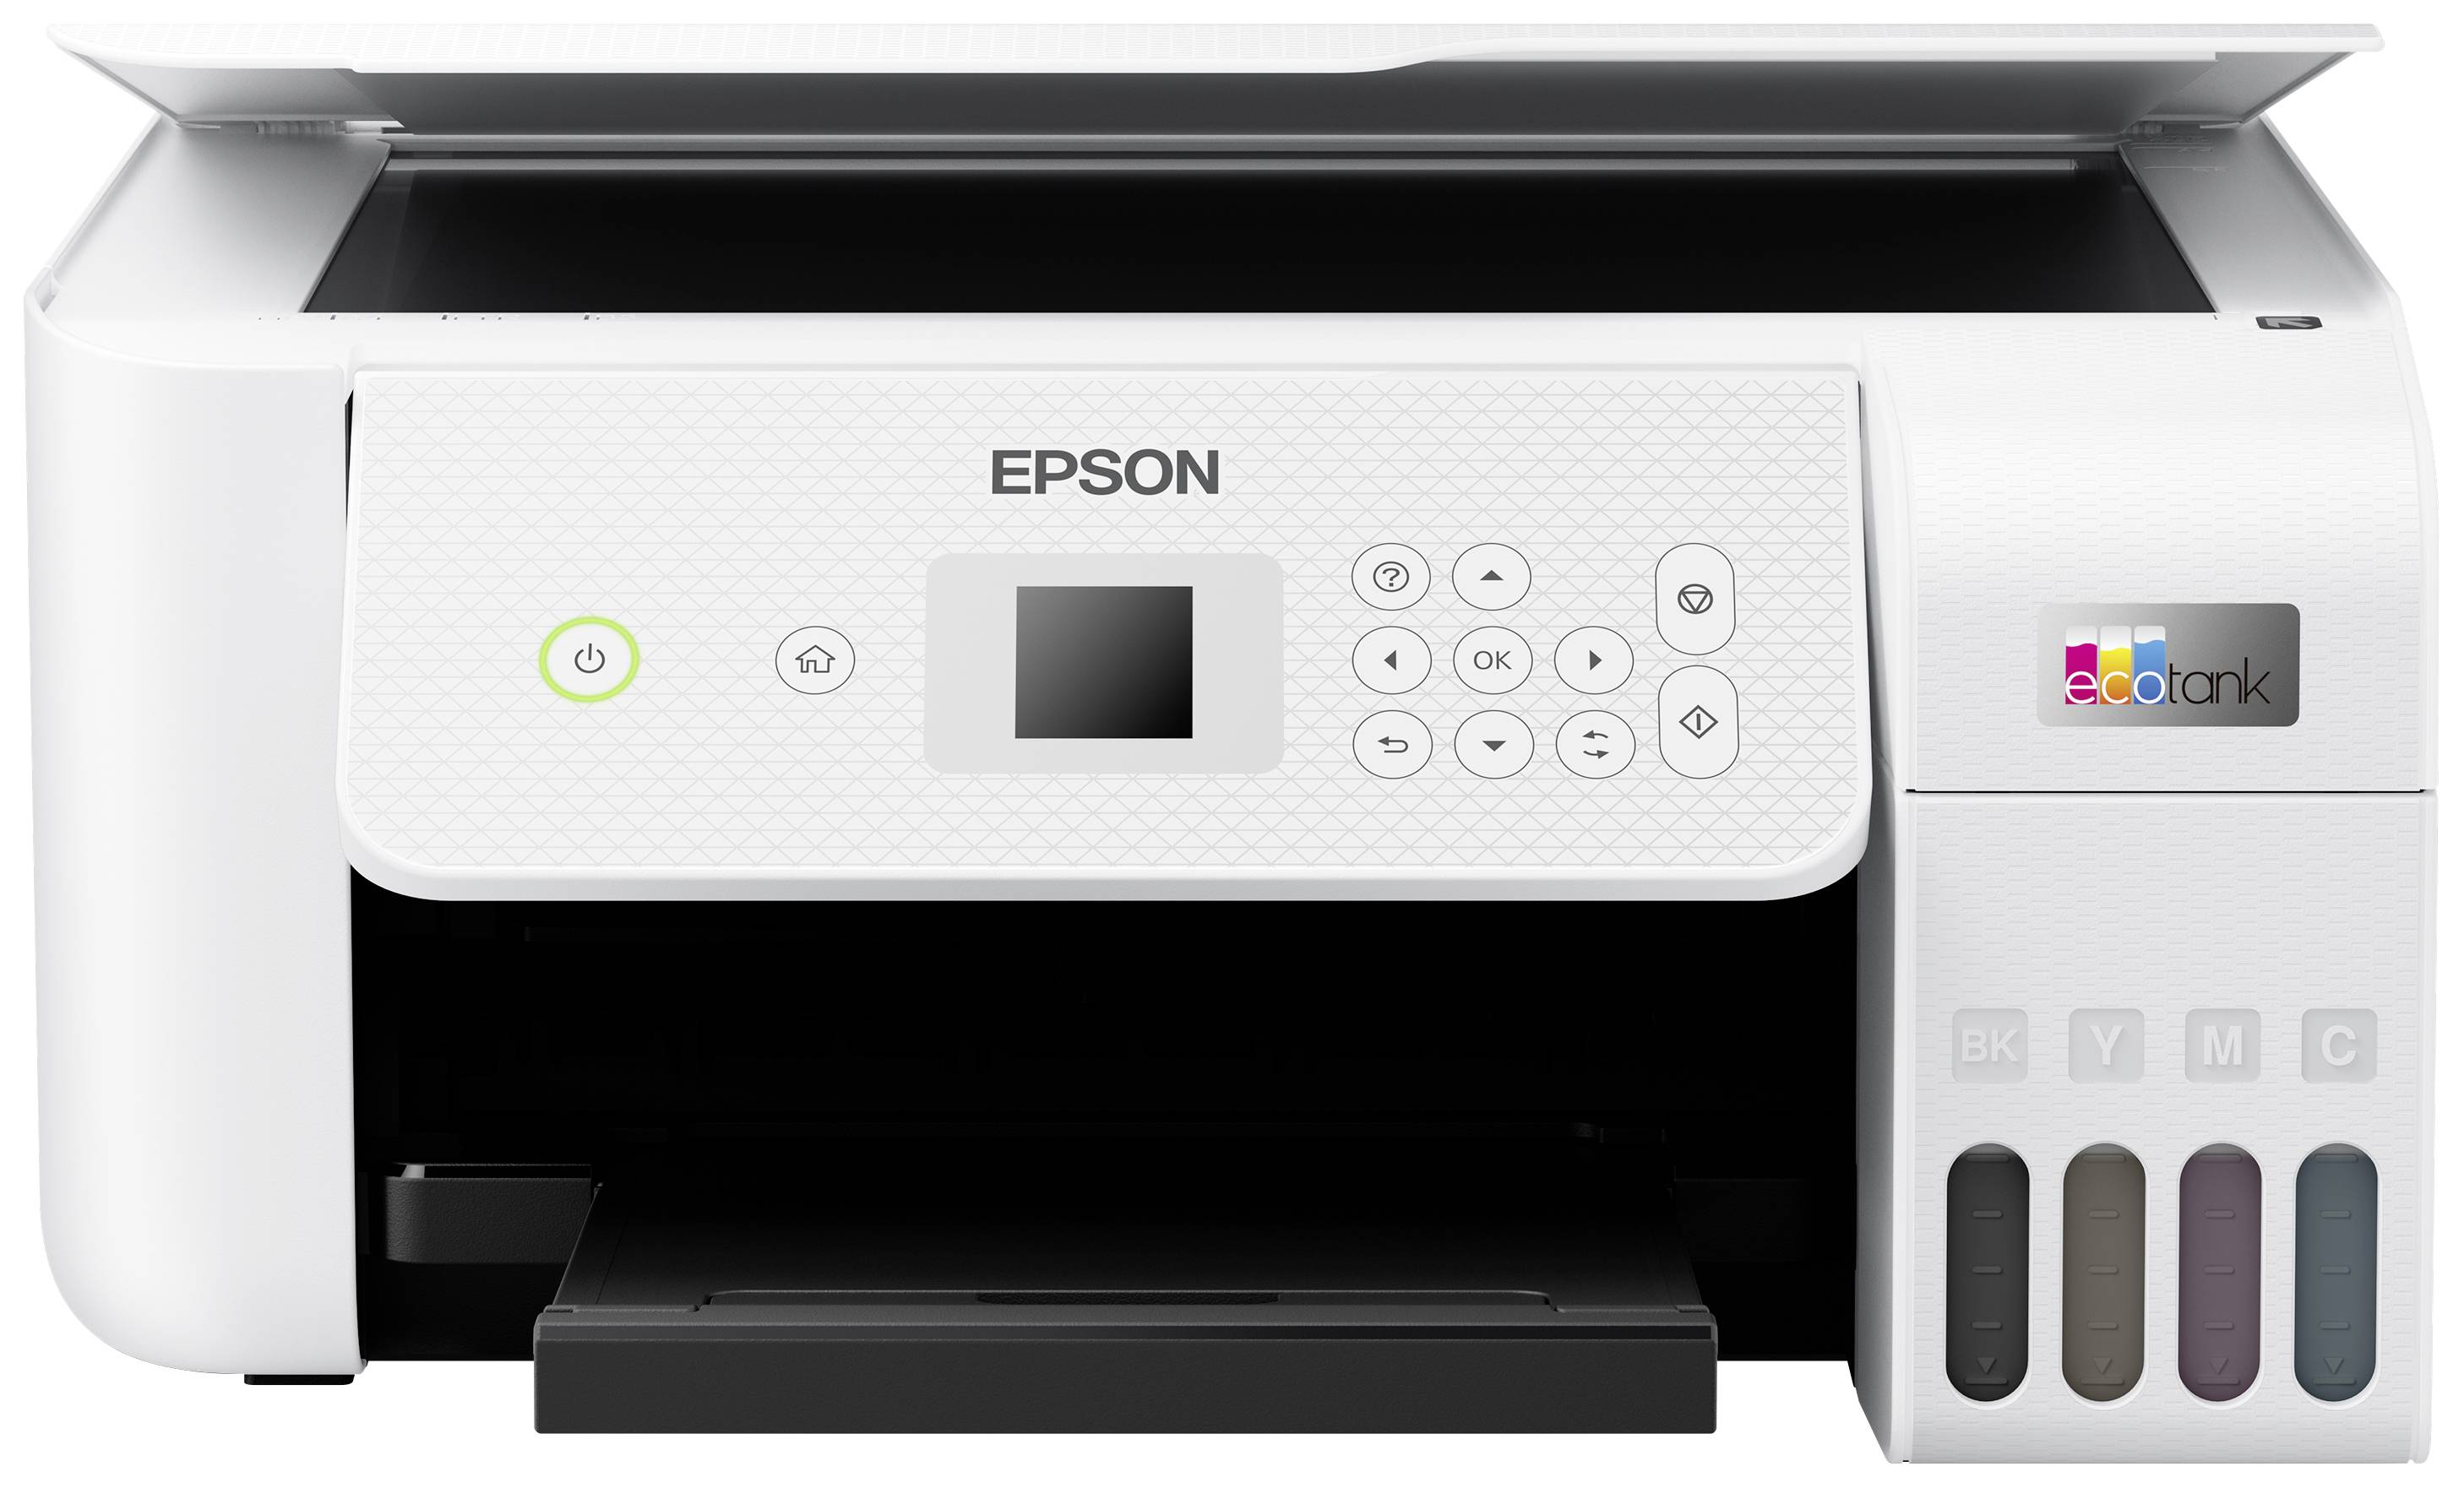 Epson EcoTank ET-4800 Imprimante multifonction A4 imprimante, scanner,  photocopieur, fax chargeur automatique de documen - Conrad Electronic France